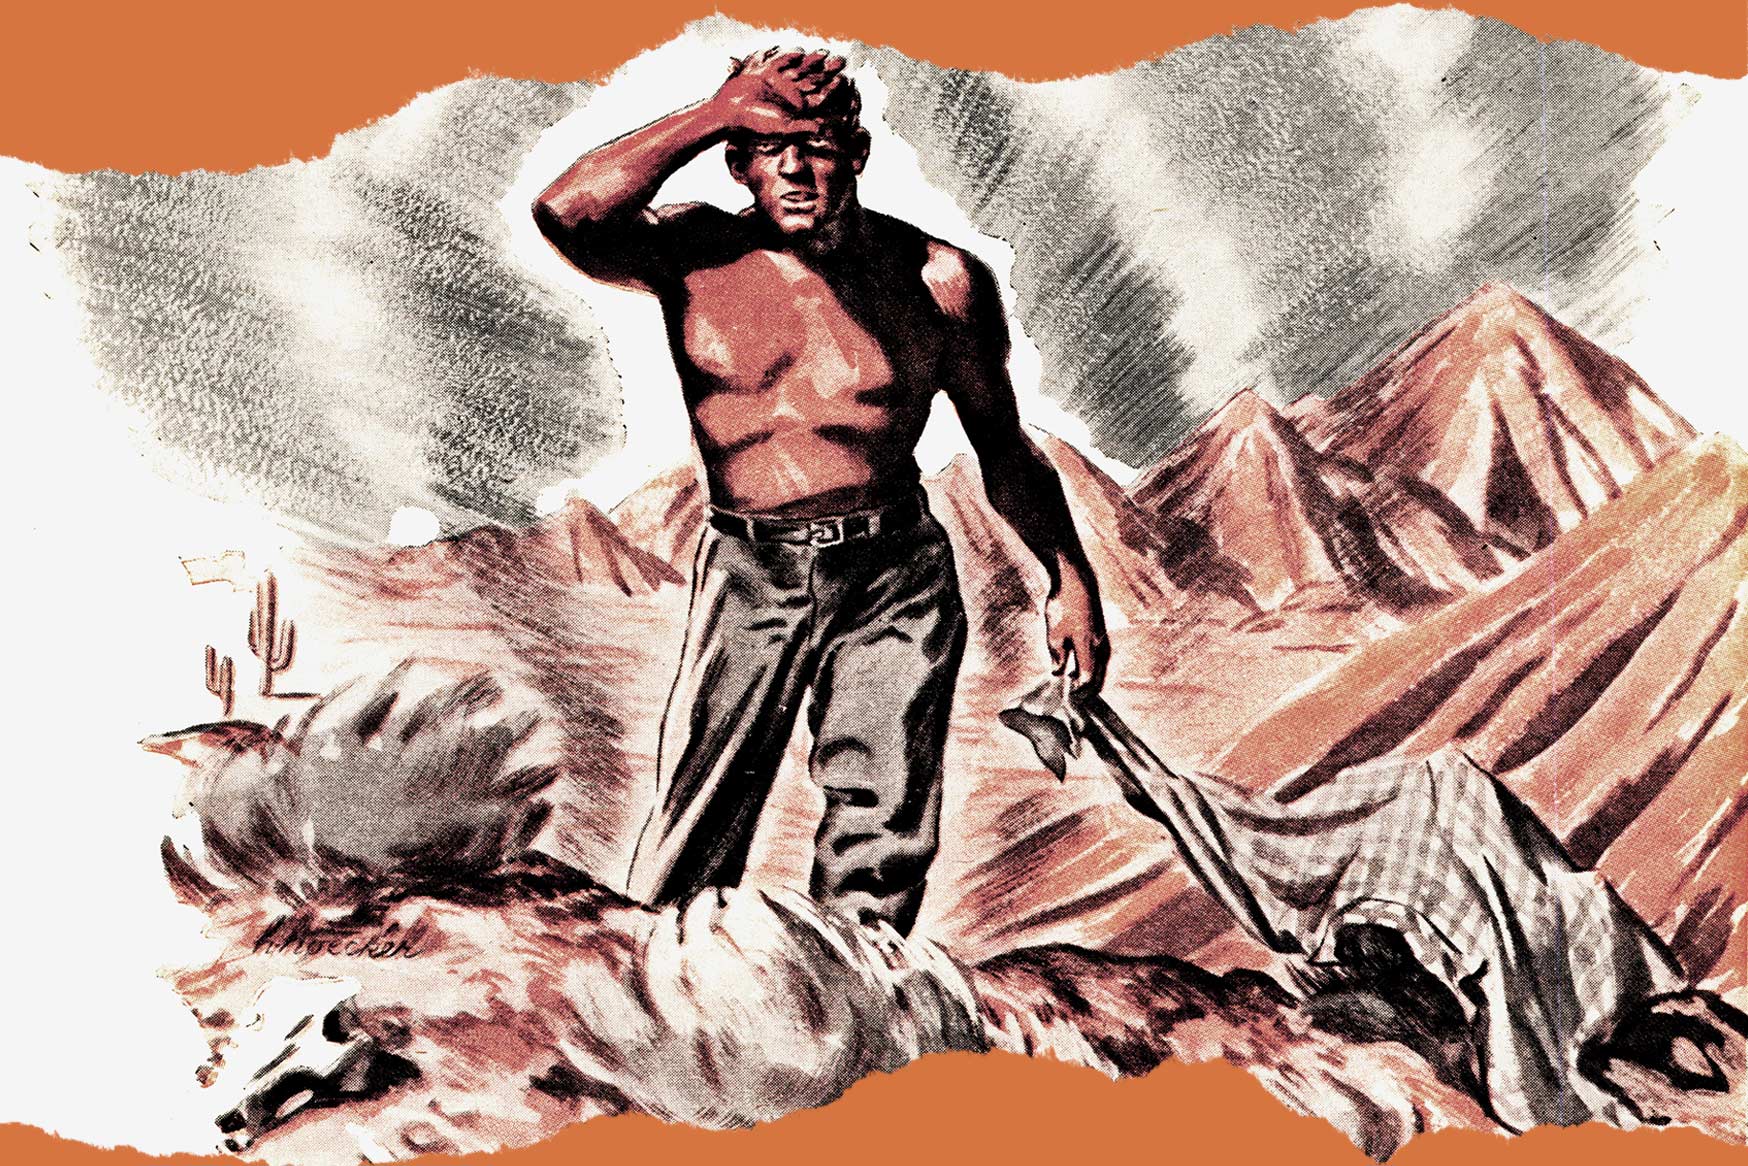 illustration of man throwing away shirt in desert heat